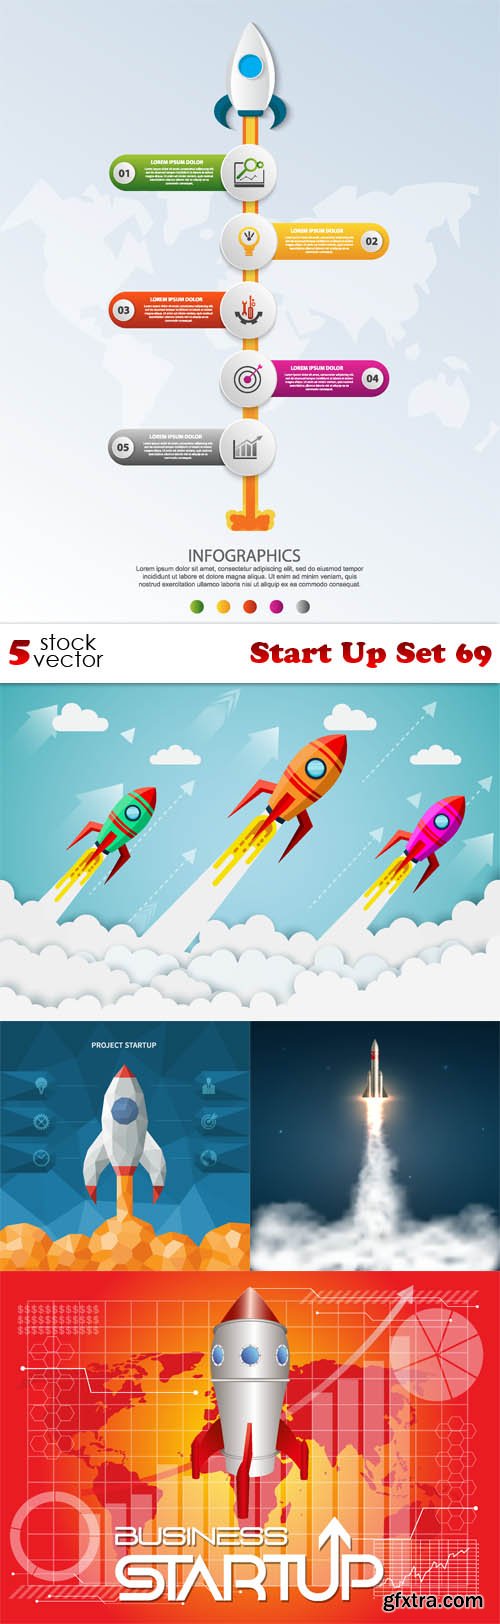 Vectors - Start Up Set 69